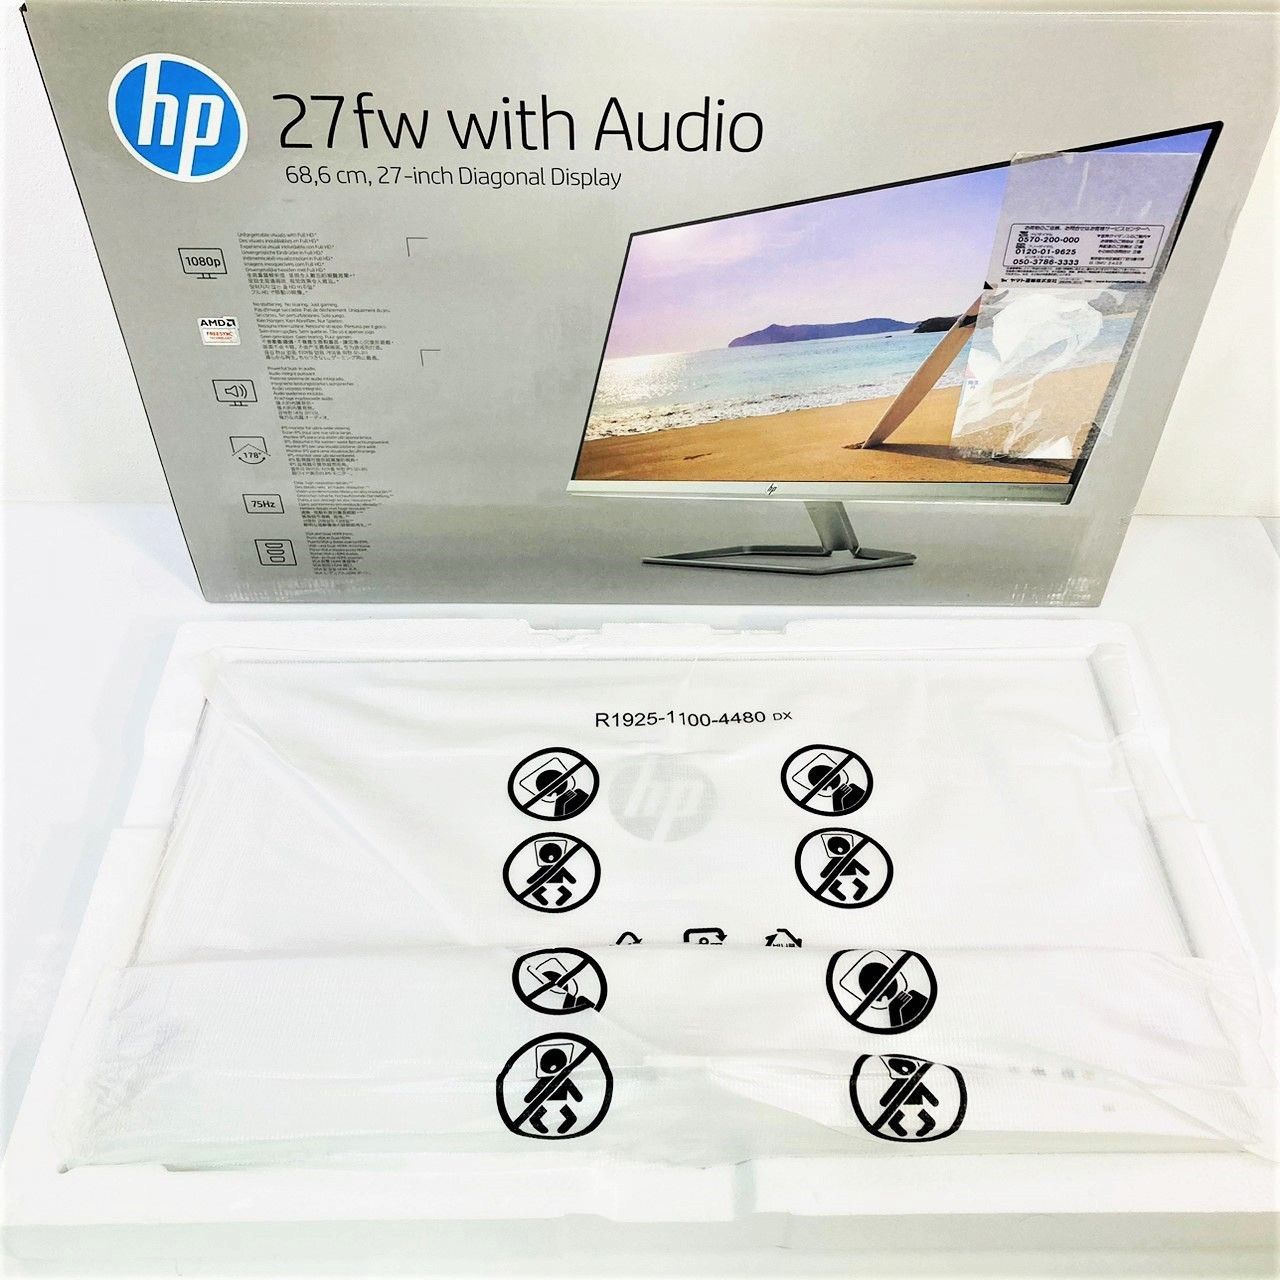 動作OK】HP 27fw Display With Audio モニター ディスプレイ 27 型